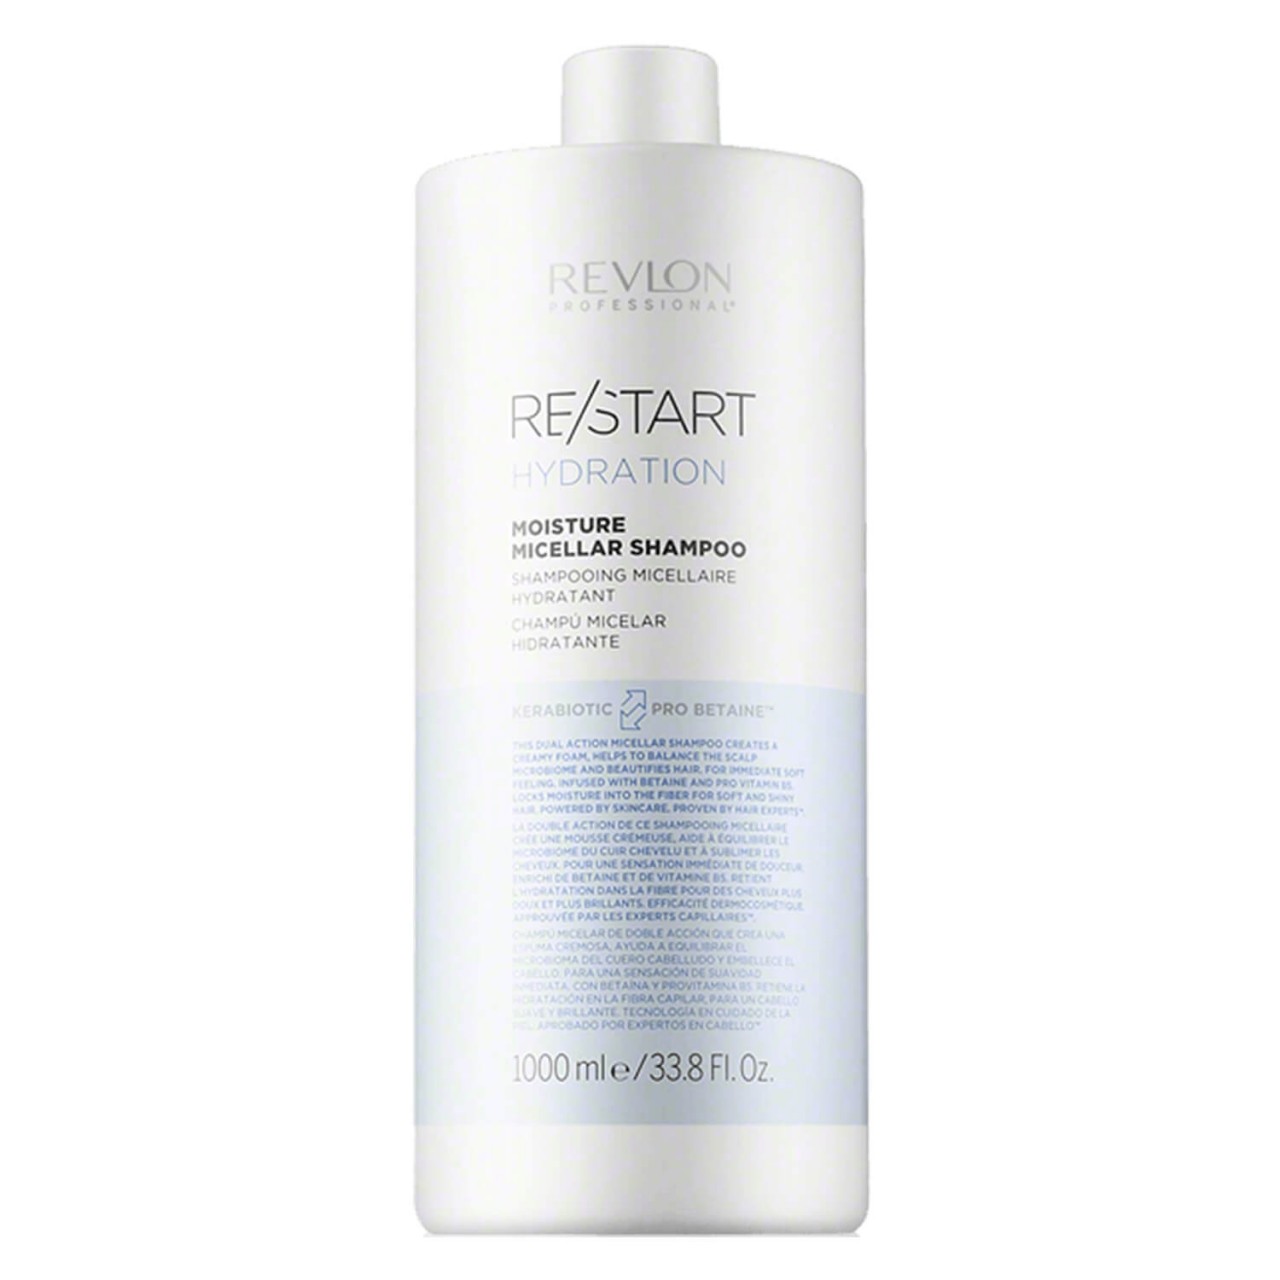 RE/START HYDRATION - Moisture Micellar Shampoo von Revlon Professional